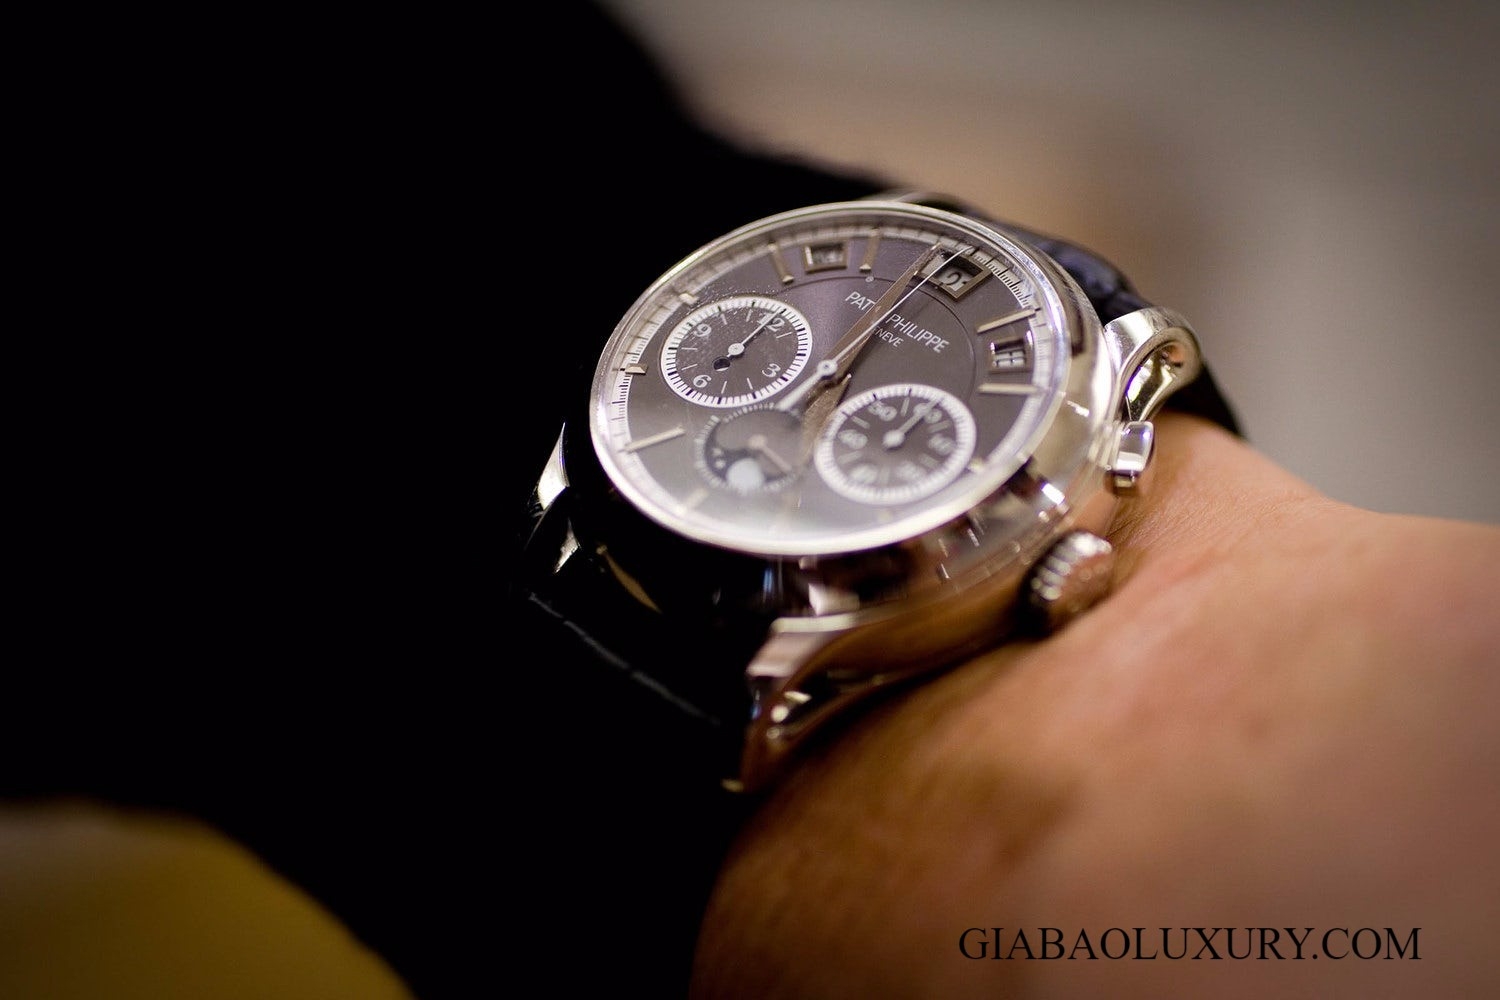 Điểm Danh 5 Thương Hiệu Đồng Hồ Bauhaus Style (Đức) Máy Cơ Giá Rẻ Nhất Tisell Automatic Watch Bauhaus Design 38 mm